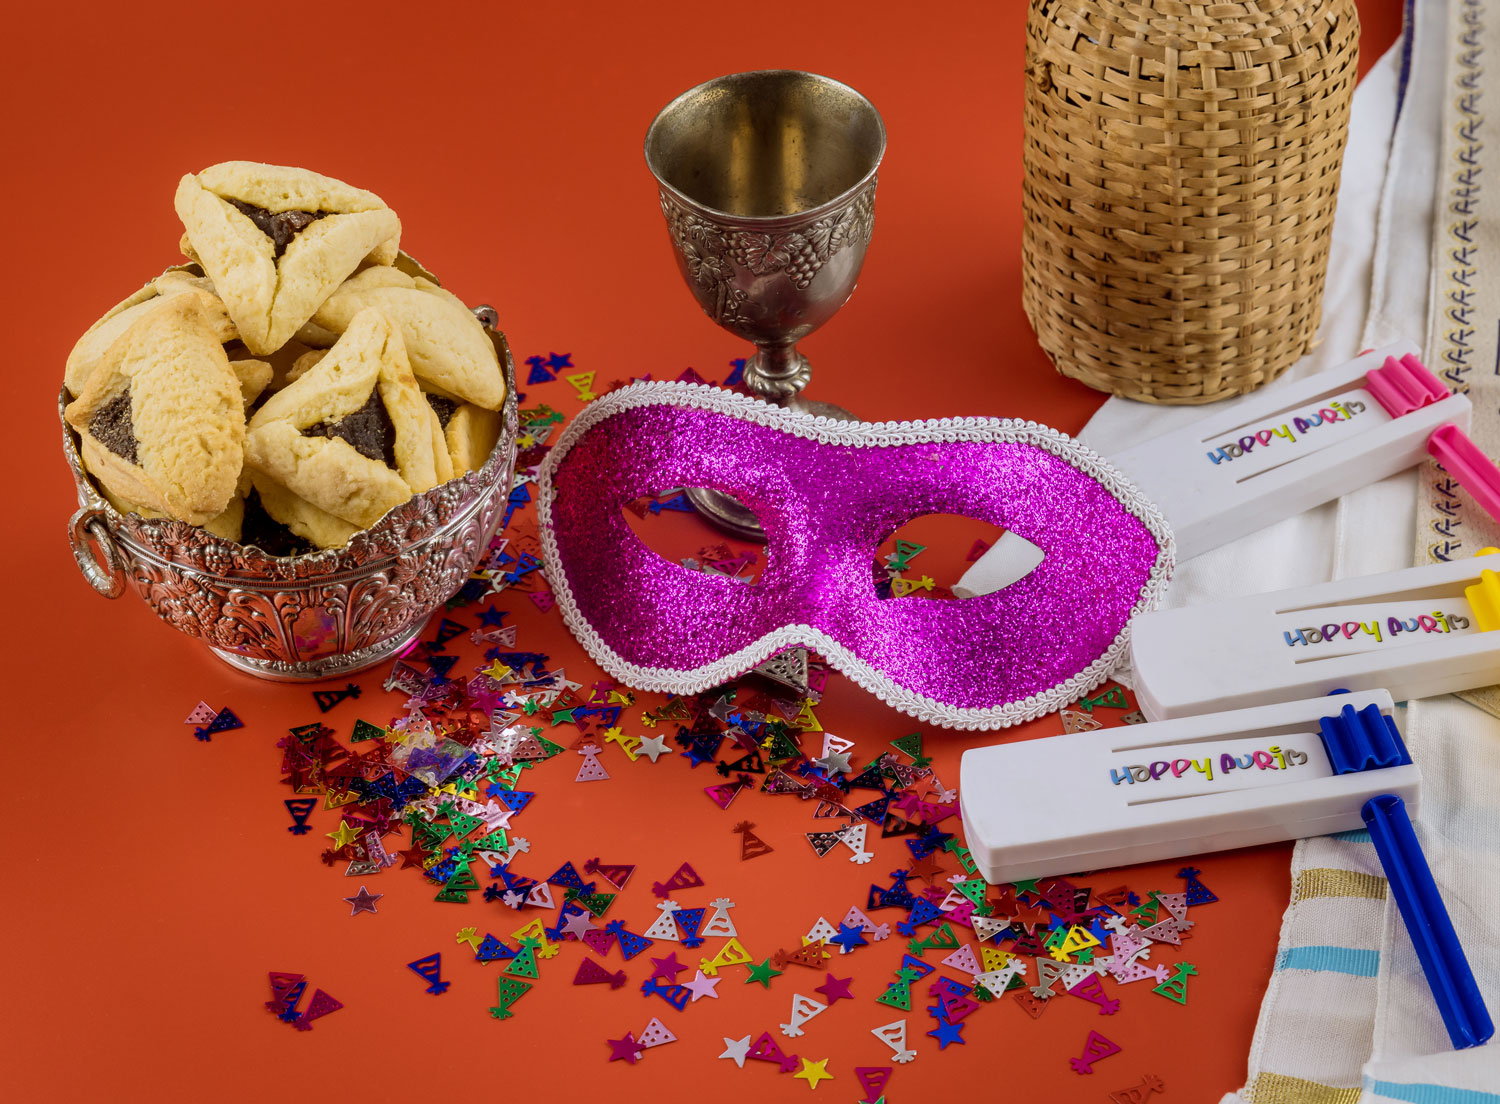 Trekantiga kakor, paljetter, karnevalmasker och skramlor med texten "Happy Purim".